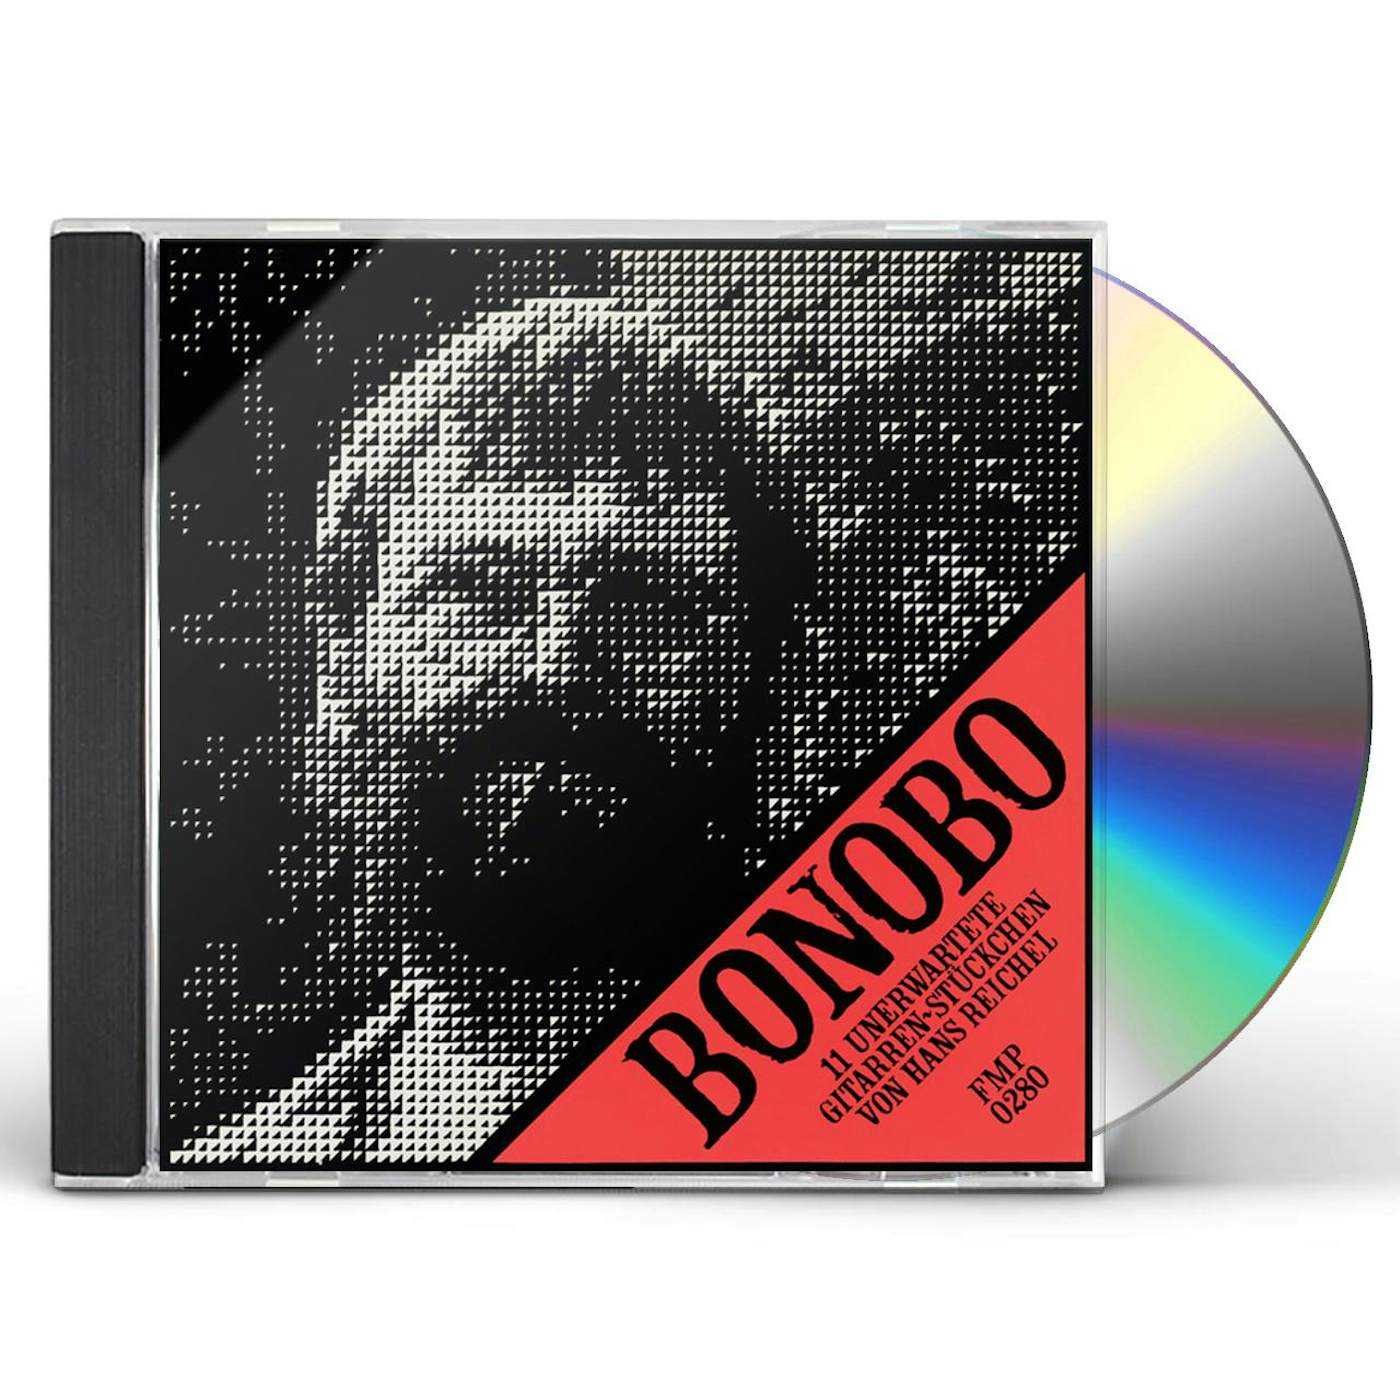 Hans Reichel BONOBO CD